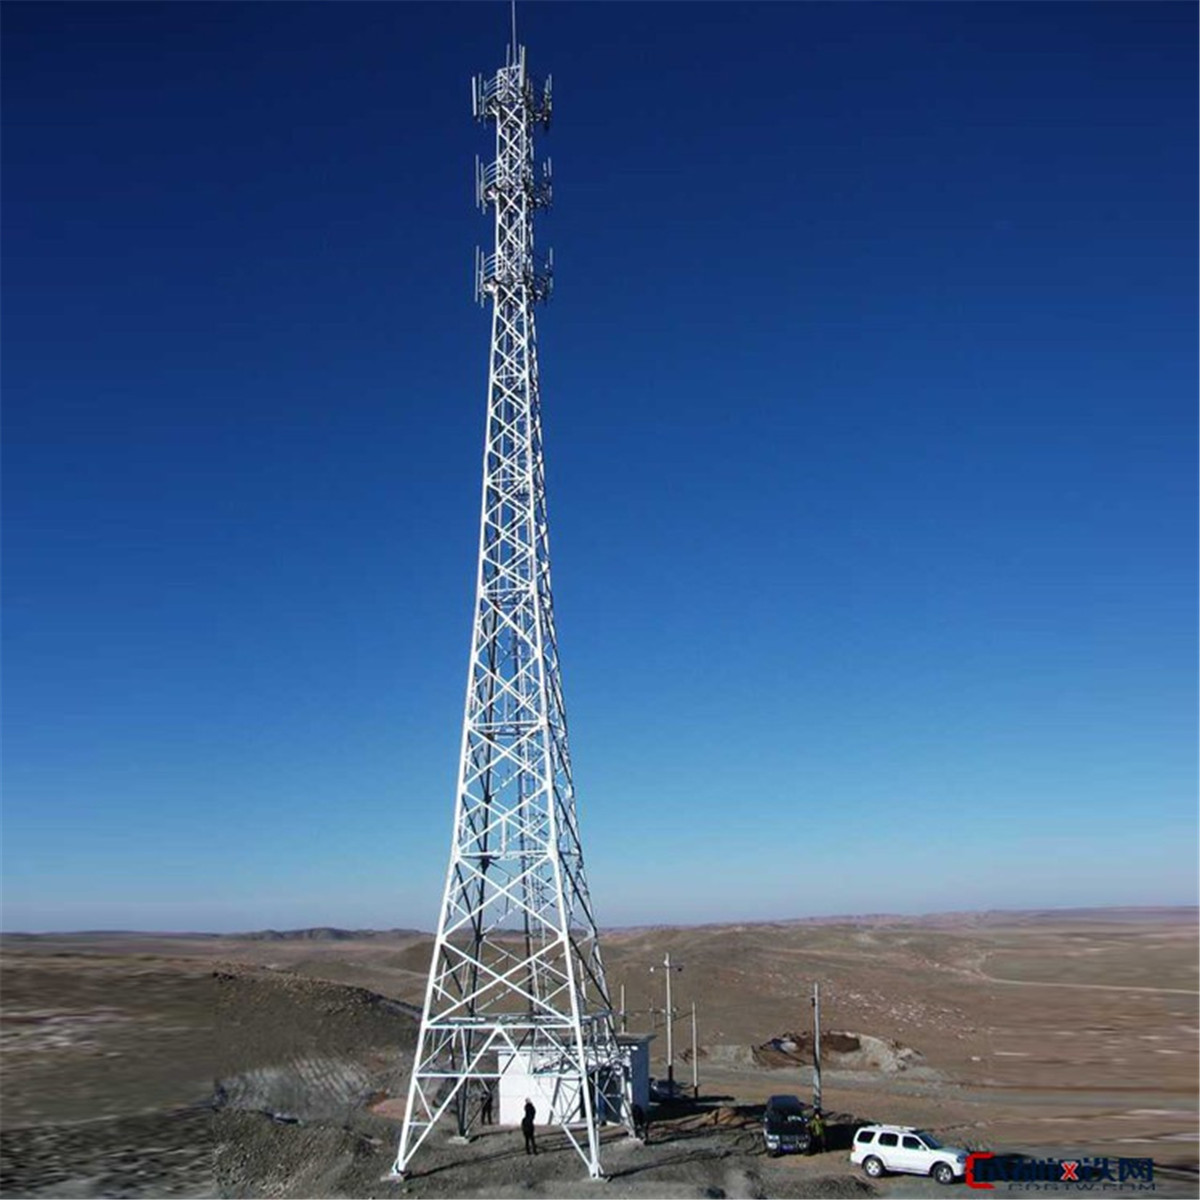 Acero de alta densidad de la telecomunicación de la torre del enrejado de la transmisión para la distribución de poder